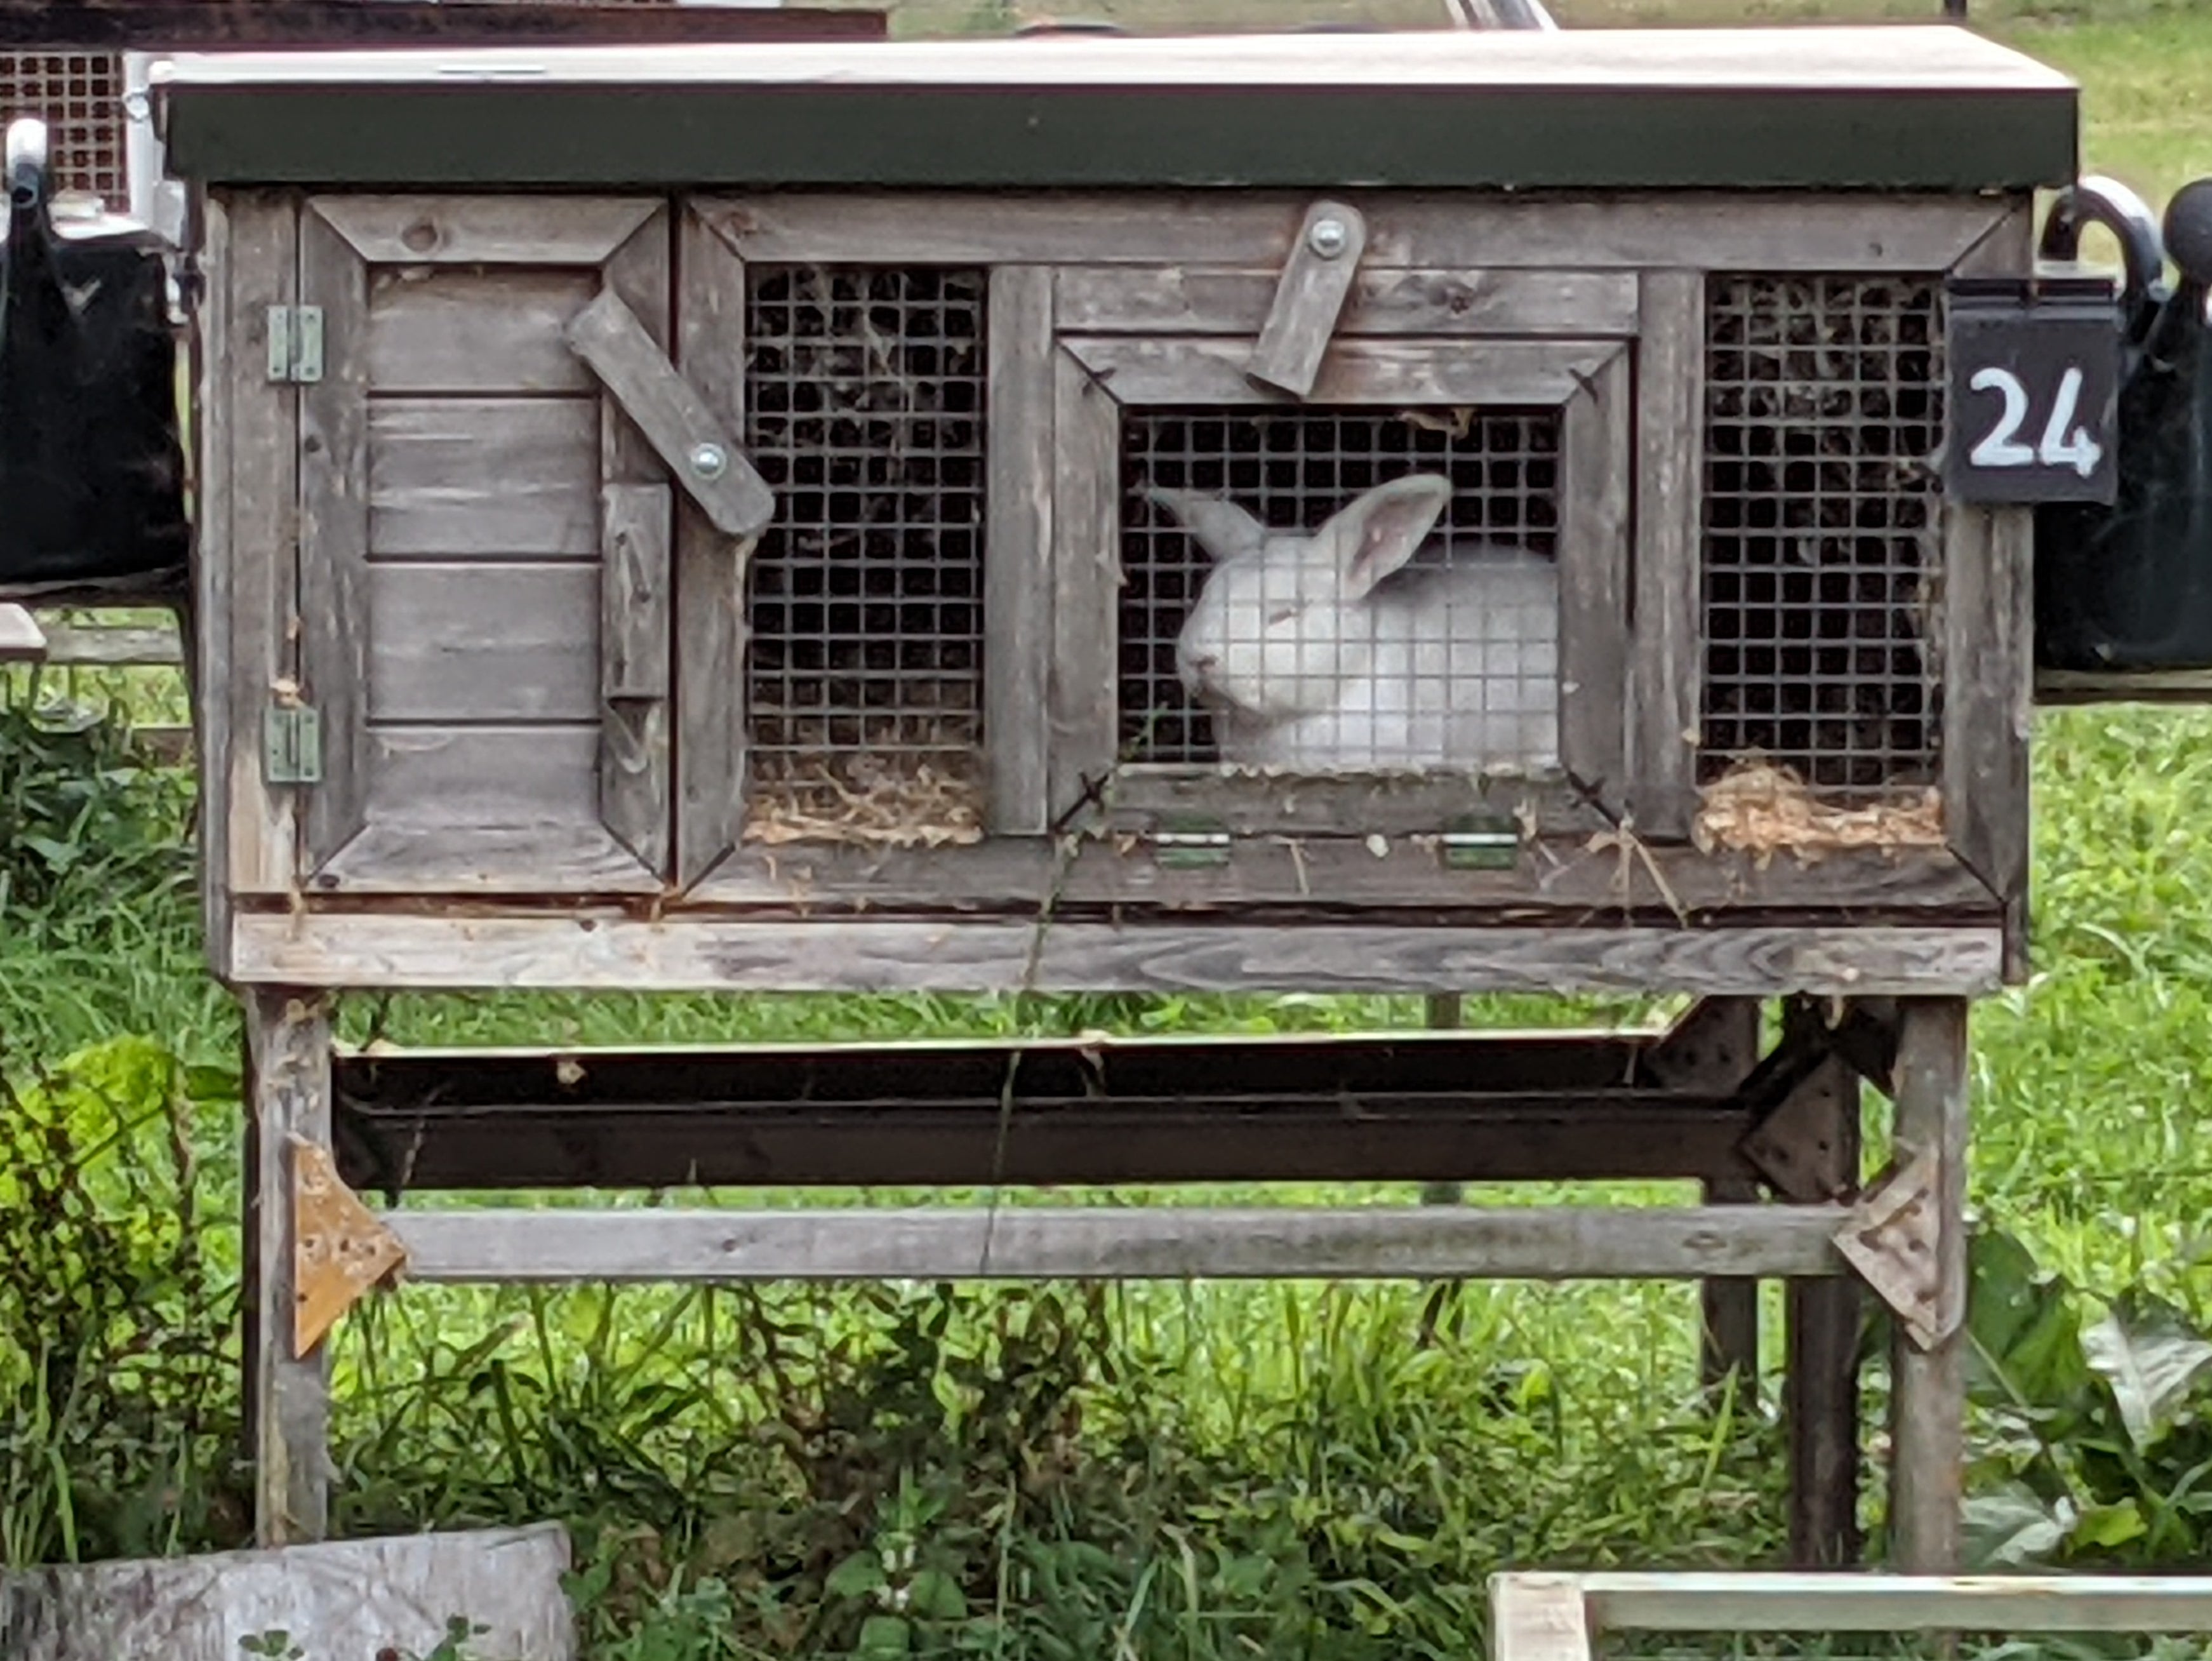 A breeding rabbit in a hutch